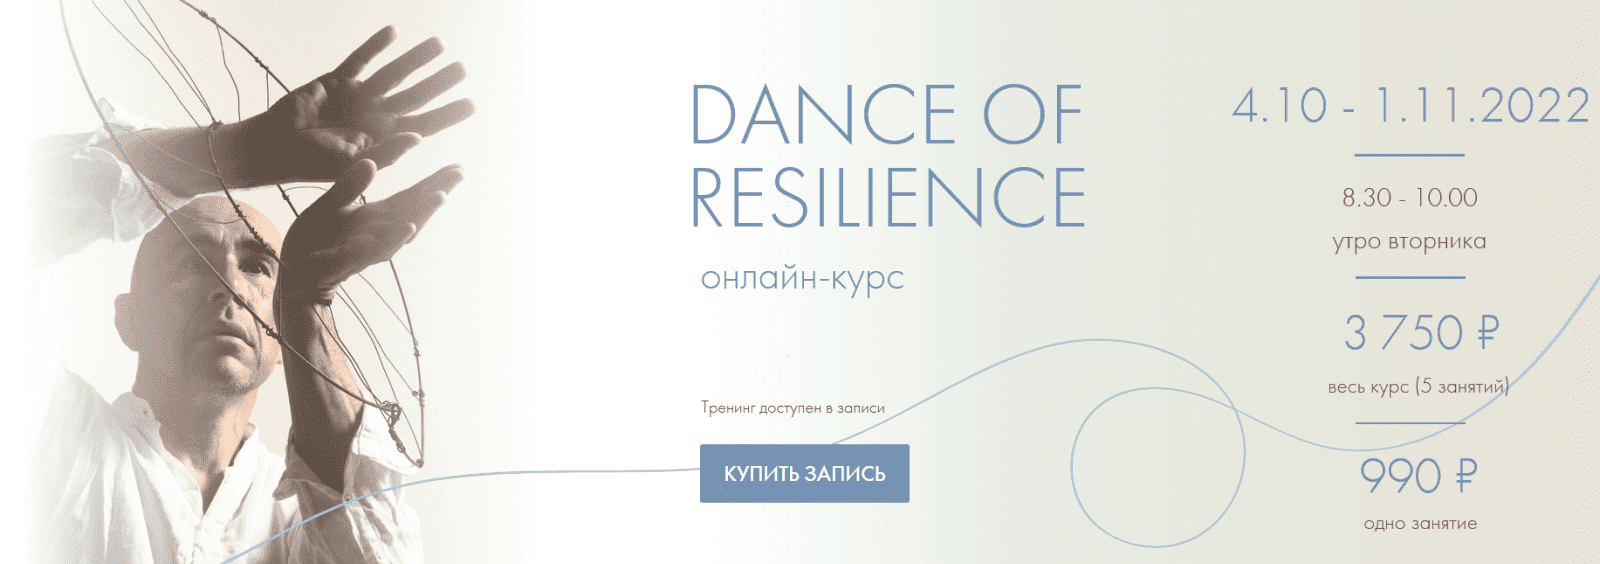 Изображение [Александр Гиршон] Dance of resilience. Танцевально-психологический курс в посте 294383